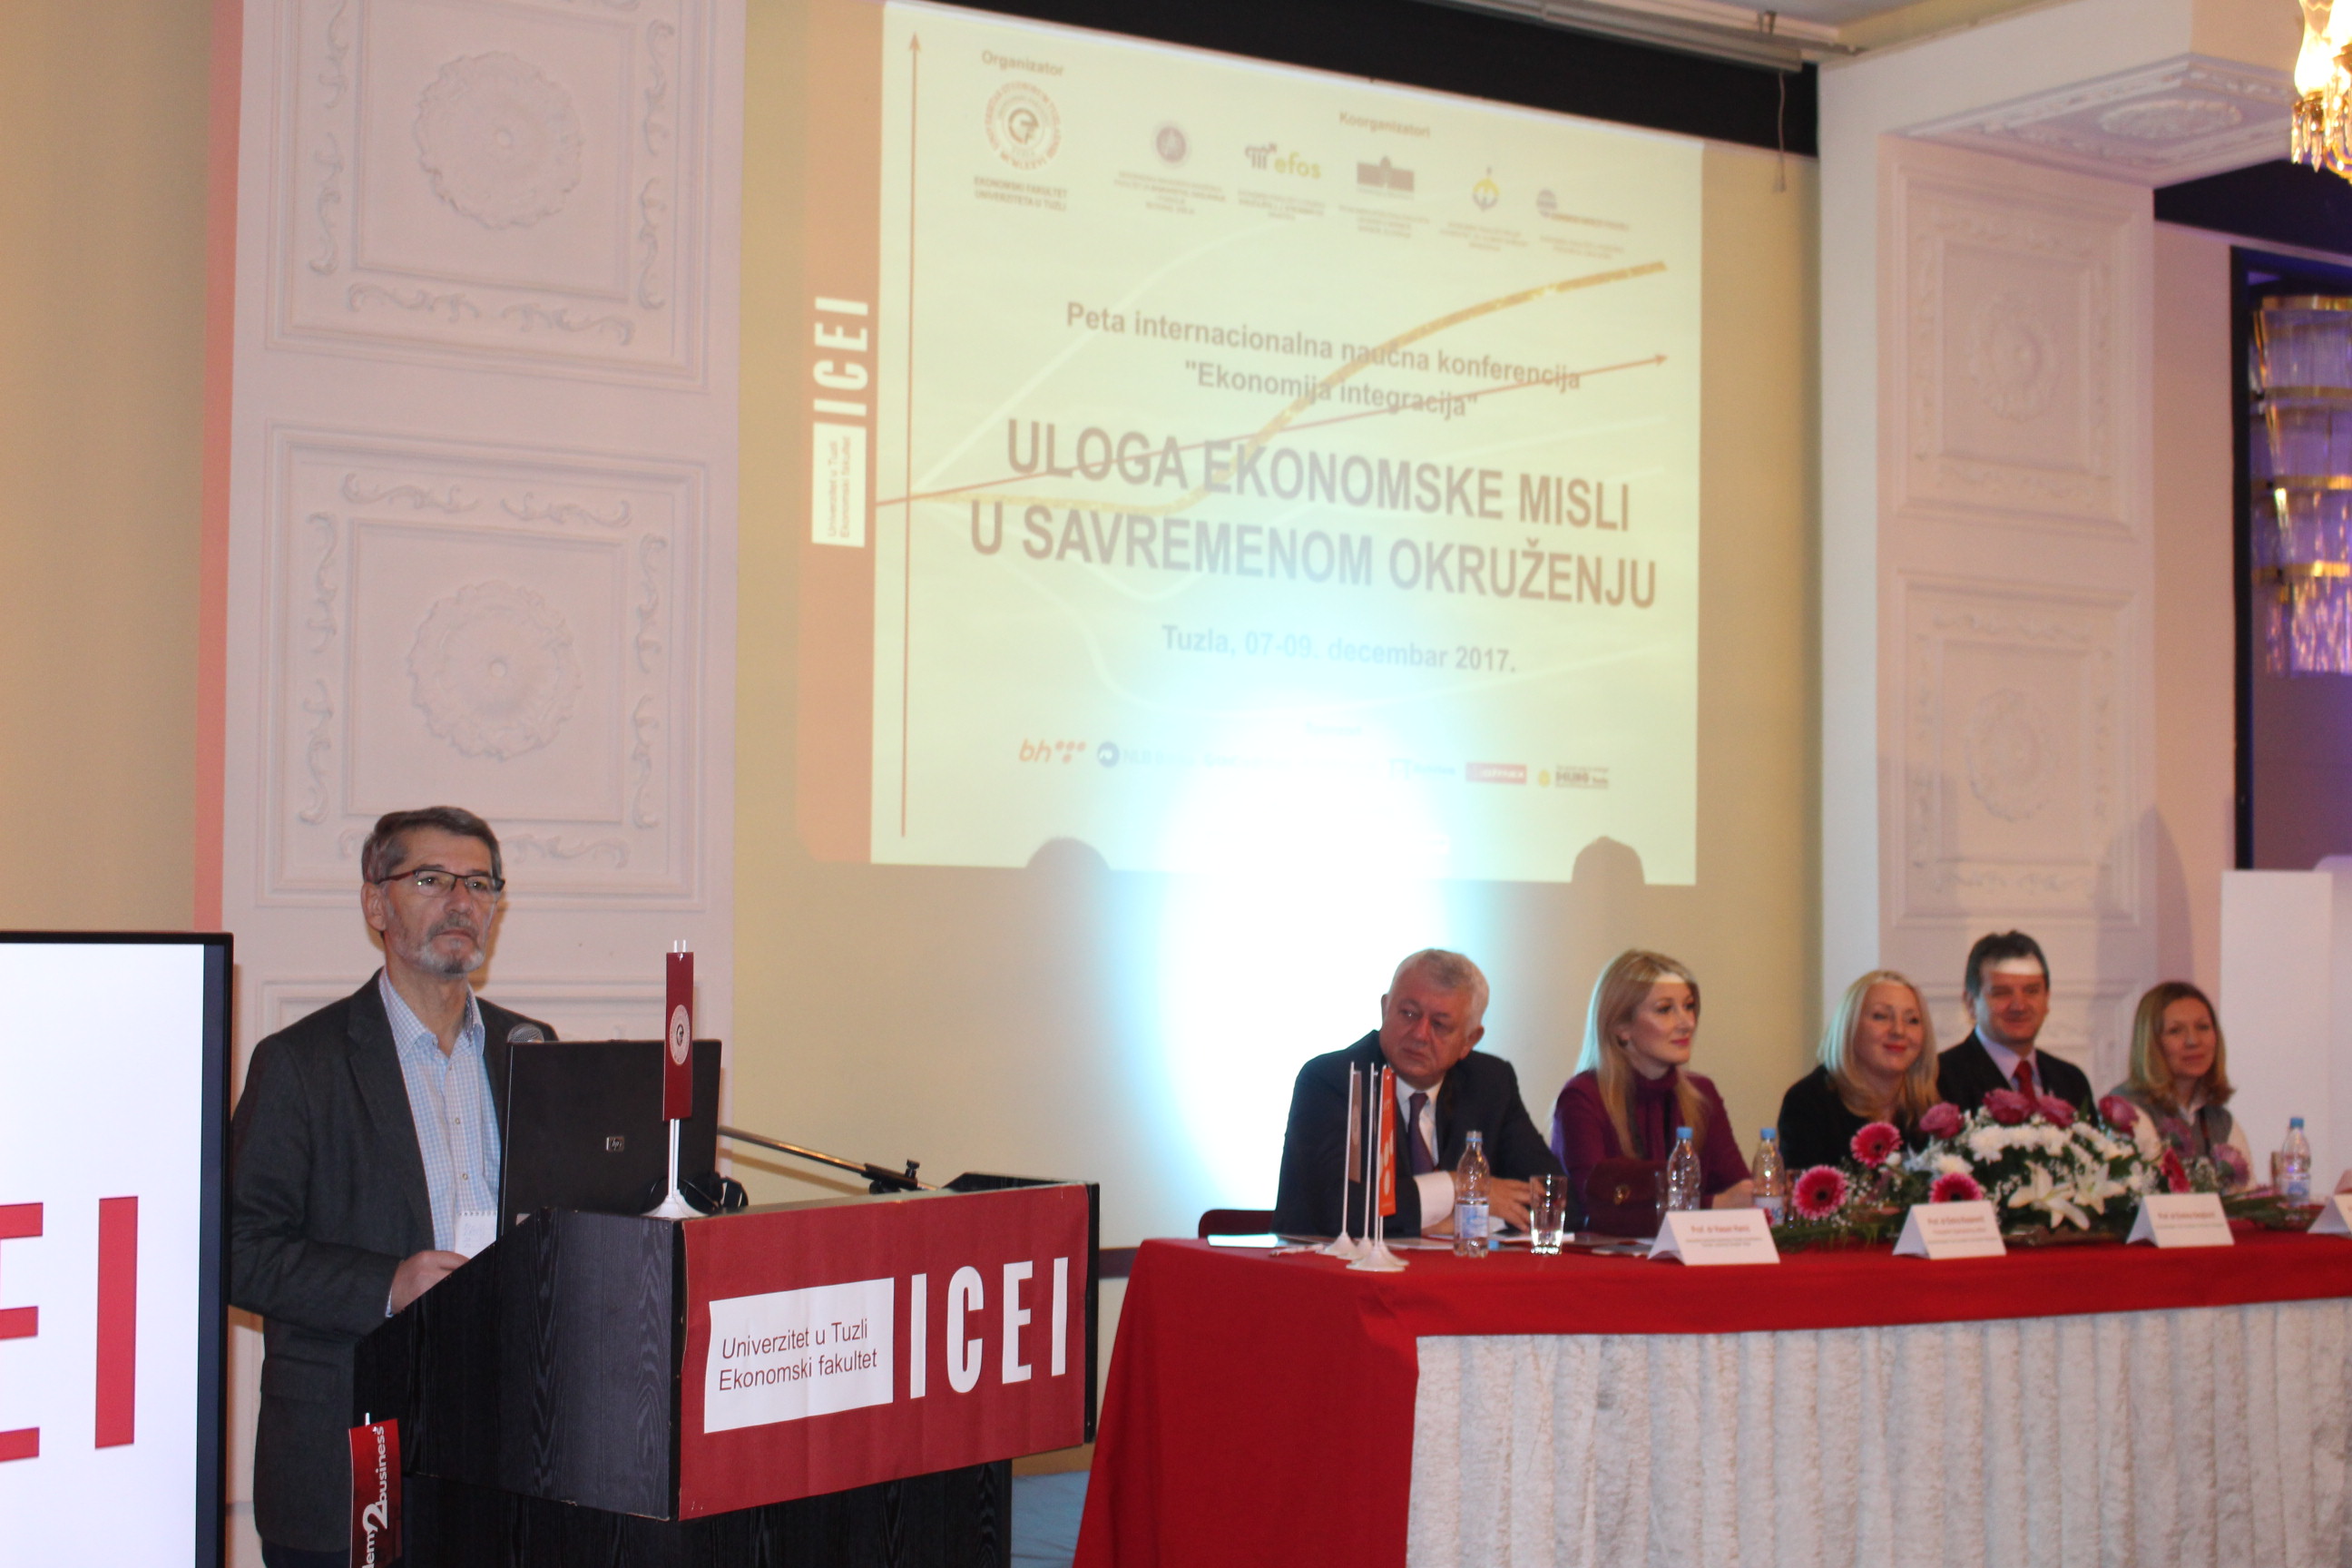 Počela Peta internacionalna naučna konferencija “Ekonomija integracija”